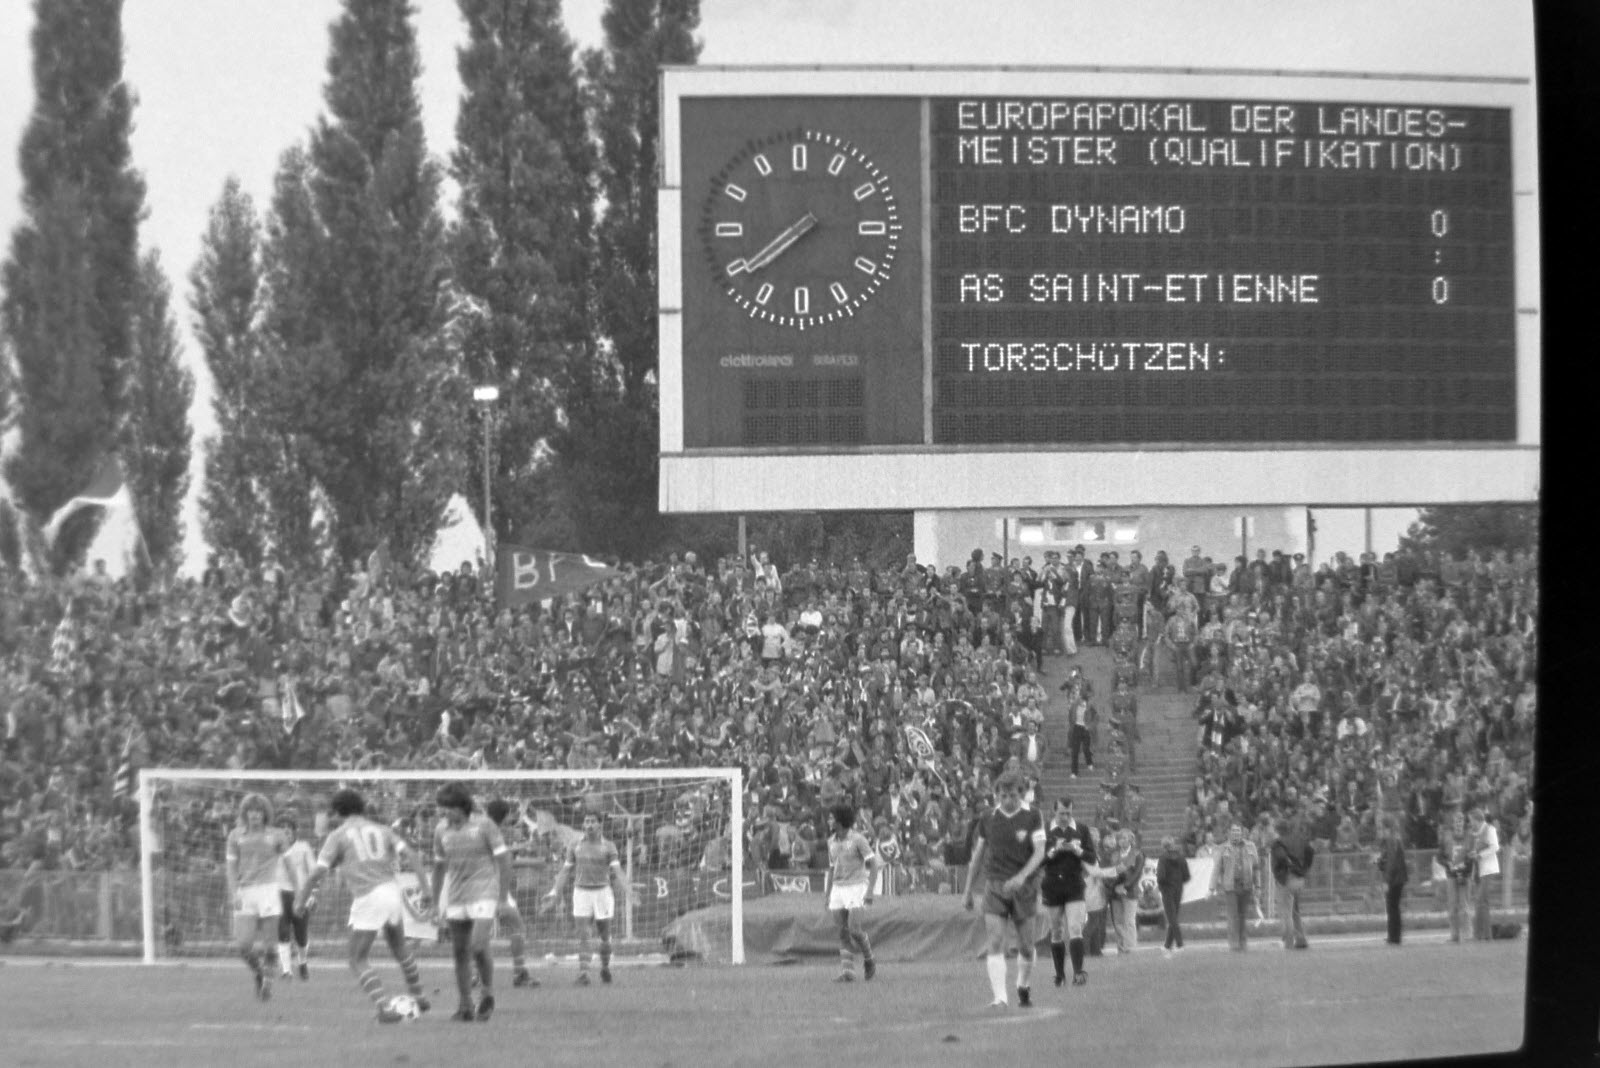 le-mardi-1er-septembre-1981-au-match-retour-les-allemands-marqueront-deux-buts-aux-stephanois-photo-archive-la-tribune-le-progres-1420003292.jpg